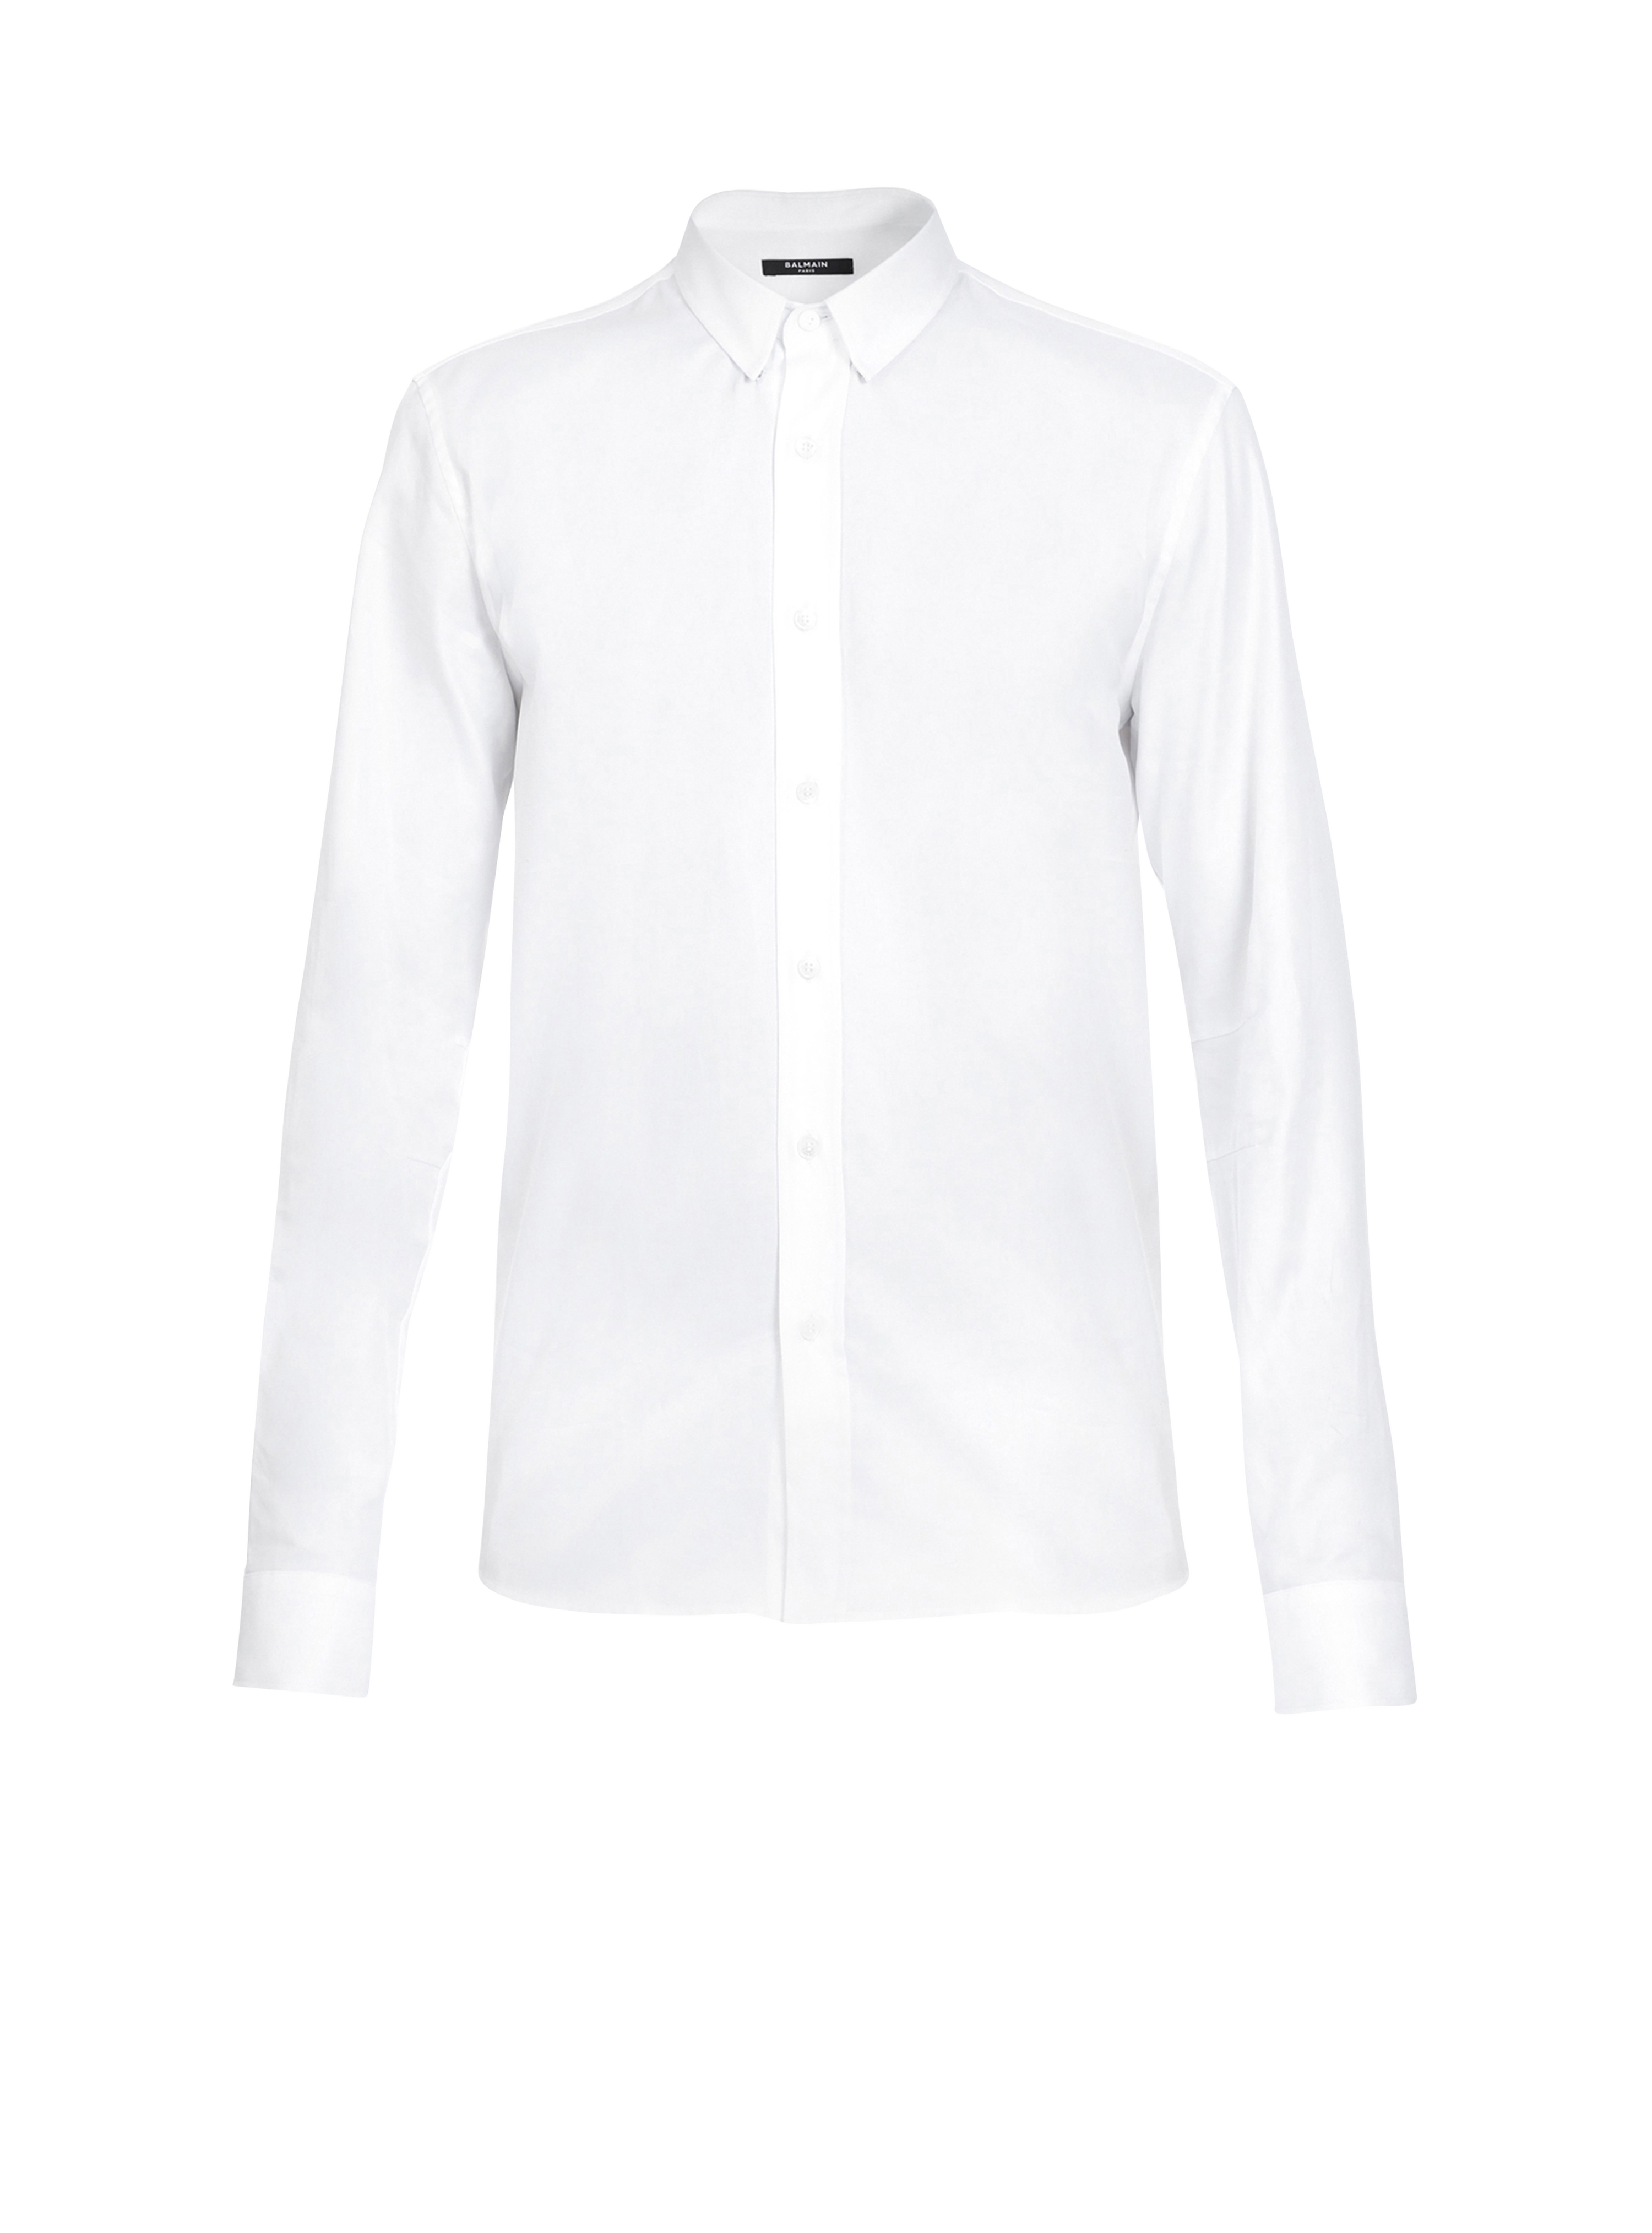 피티드 화이트 코튼 셔츠, 흰색